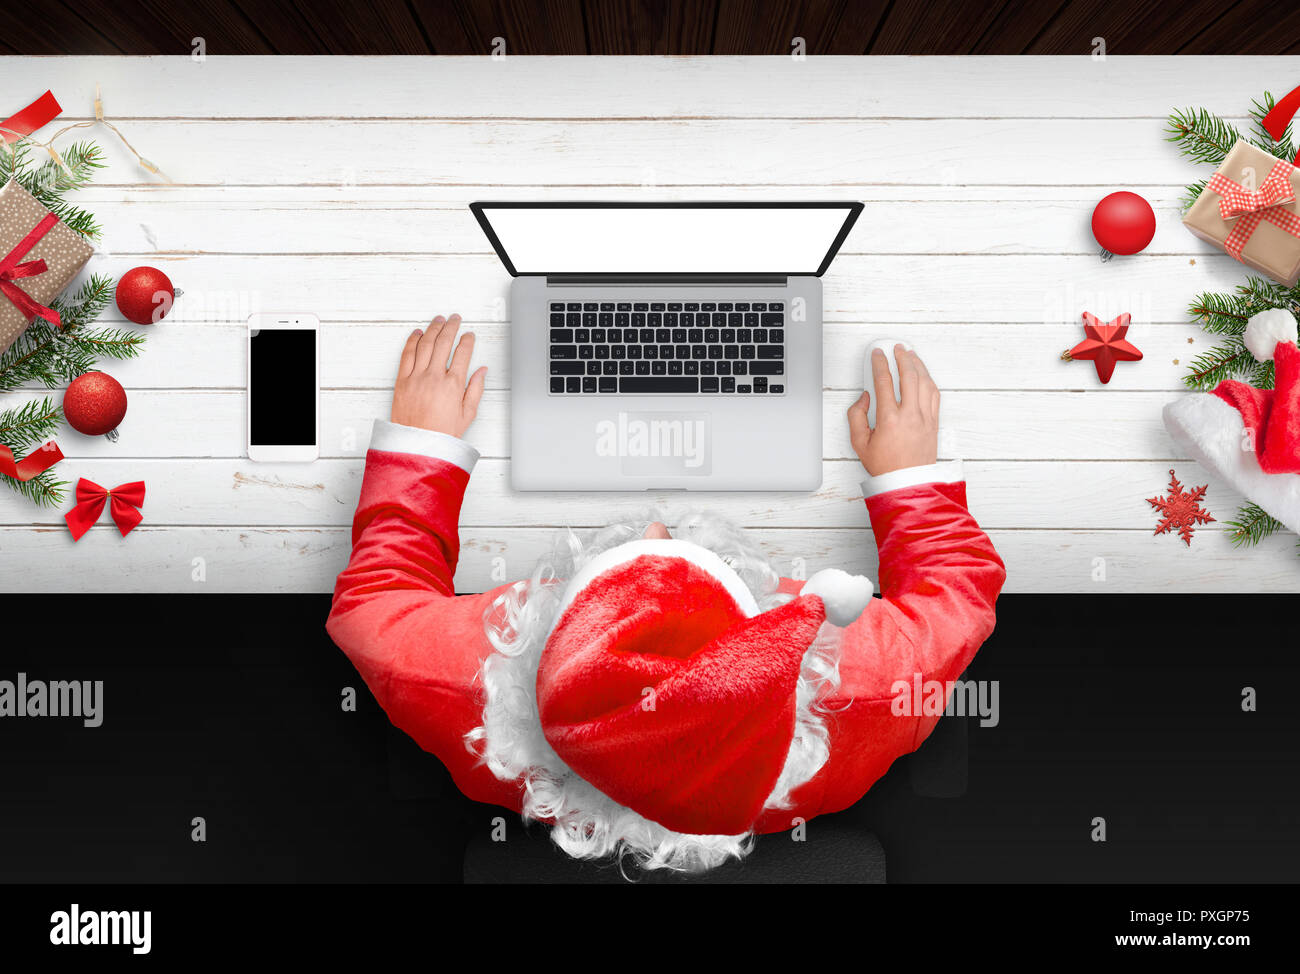 Santa Claus travailler sur ordinateur portable avec écran isolé pour une maquette. Le temps de Noël. Bureau en bois avec des décorations de Noël. Téléphone portable à côté. Haut Banque D'Images